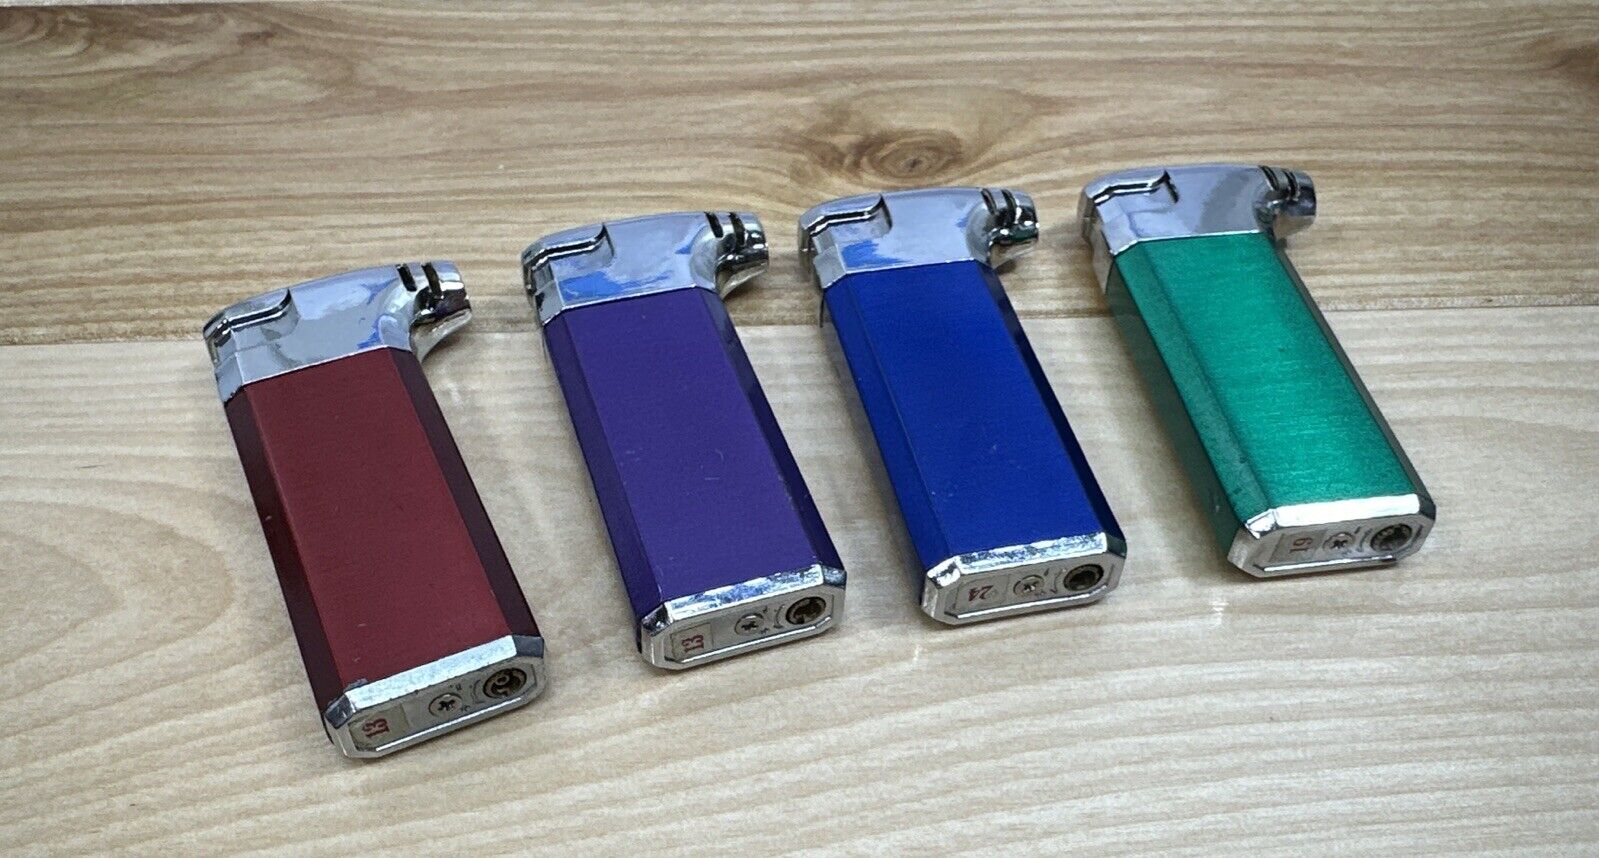 (4) Vintage, Refillable Butane Metal Pocket Lighters Lot - Work, Tested